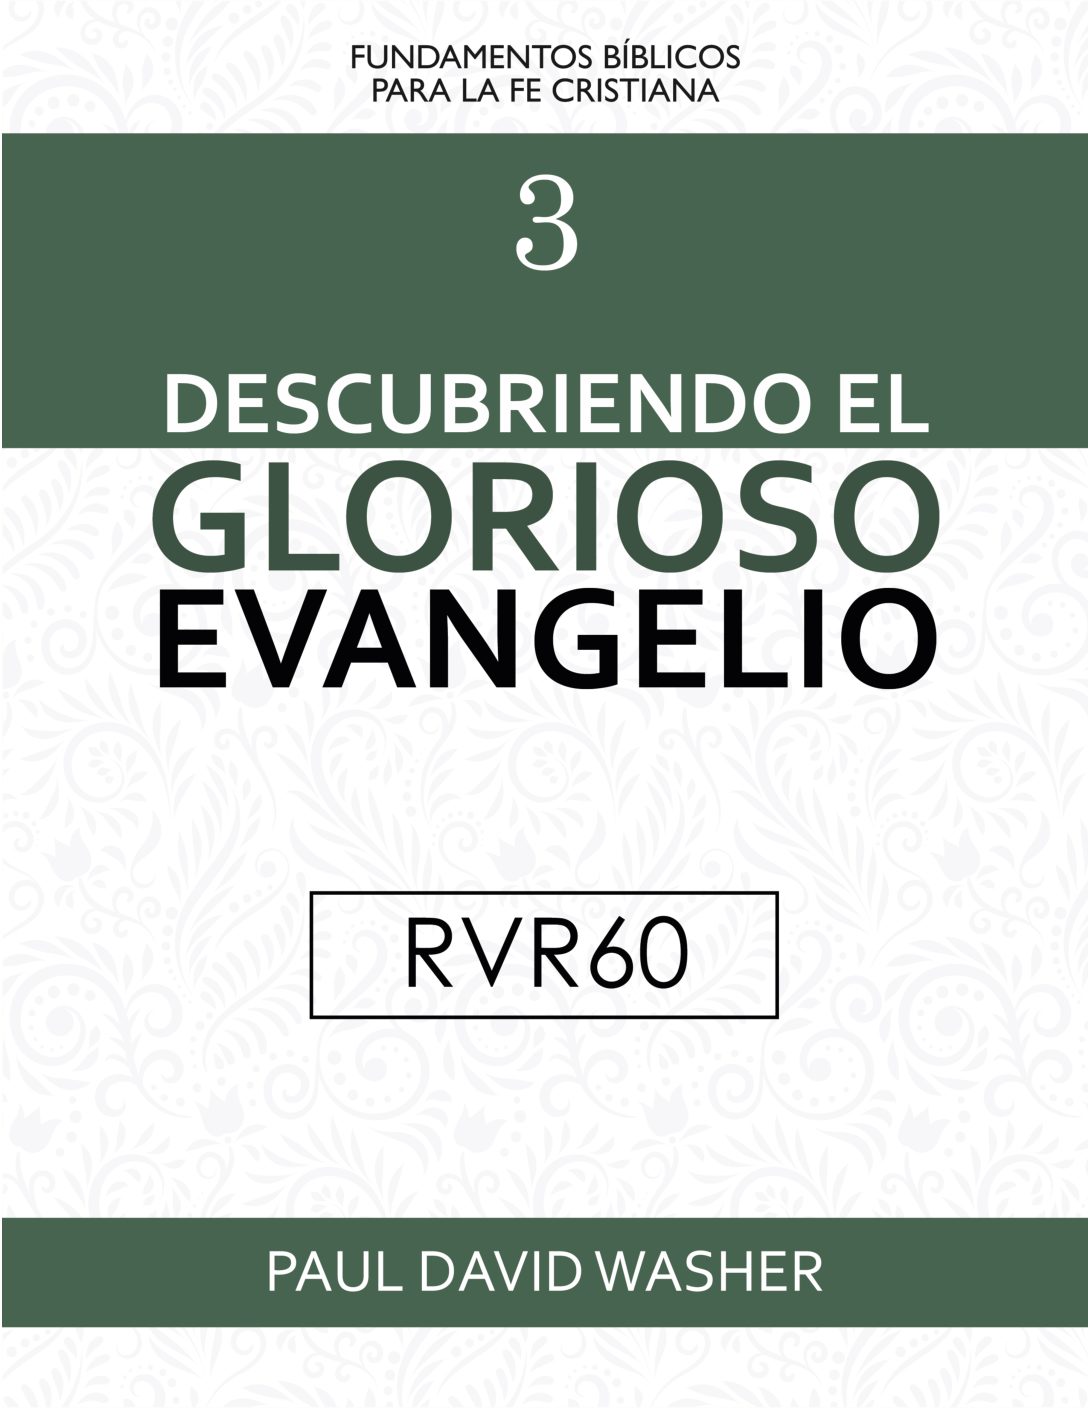 Digital_HeartCry_descubriendo el evangelio_RVR60